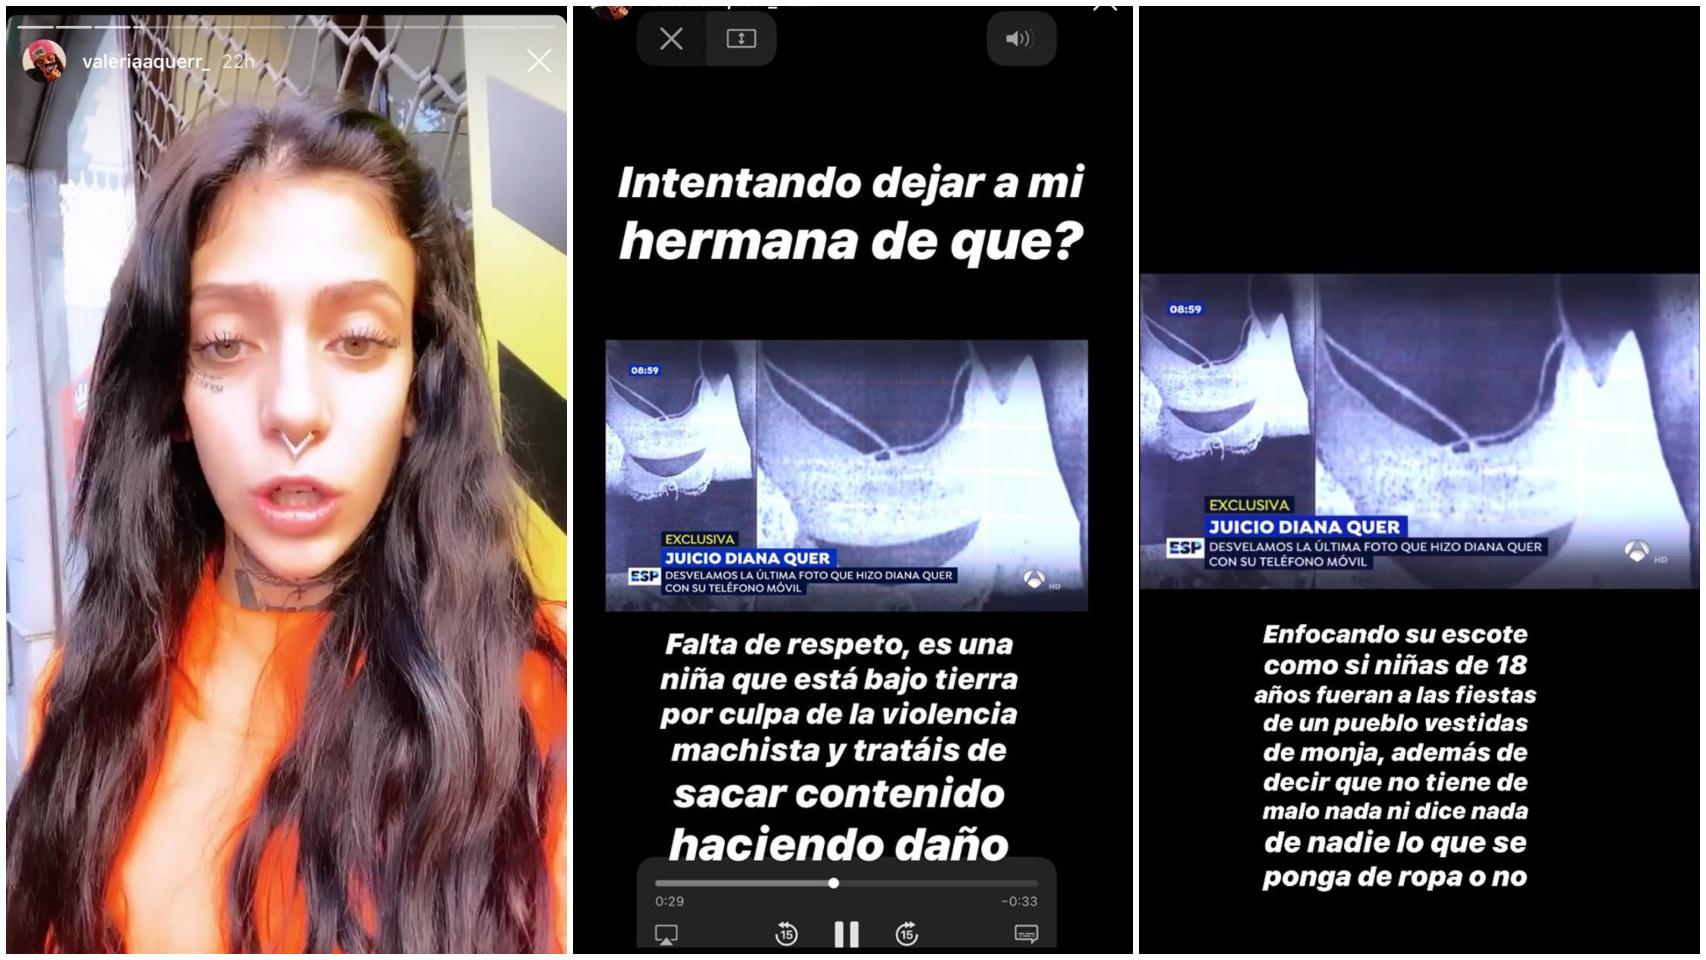 Valeria se quejó a través de sus redes sociales de la imagen compartida por Espejo Público.